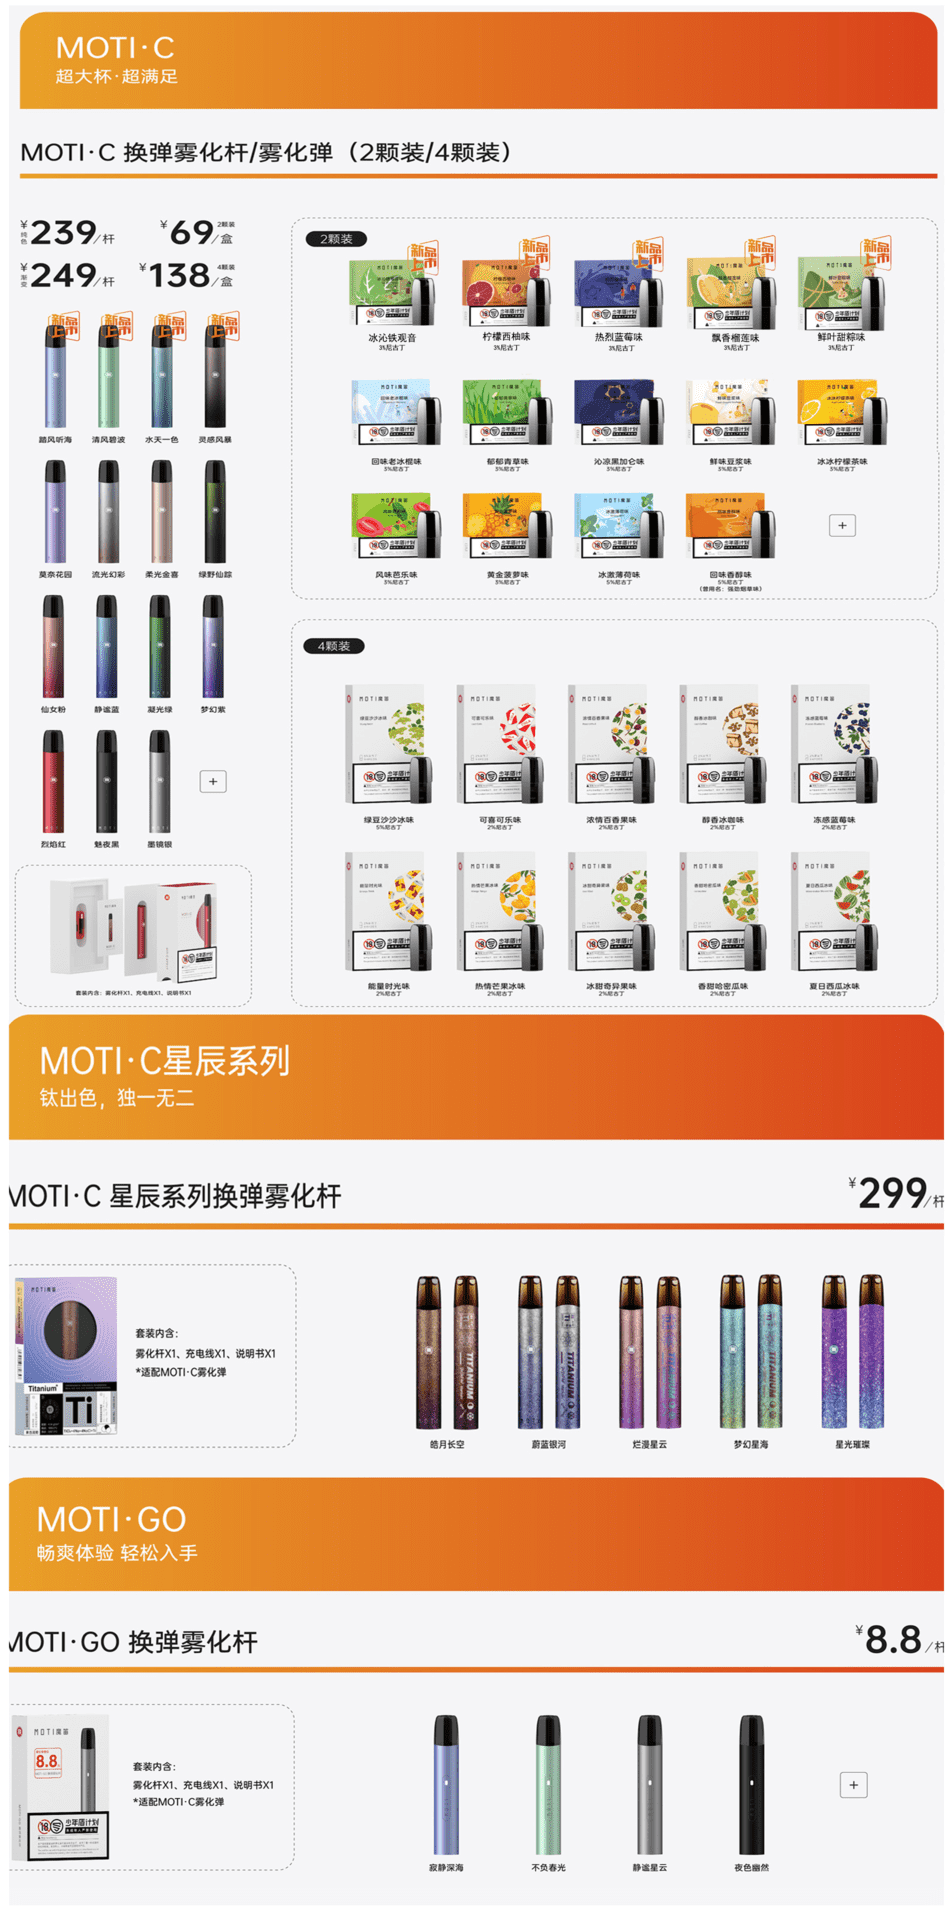 魔笛电子烟官方售价是多少钱?哪里能买到更便宜的魔笛产品?